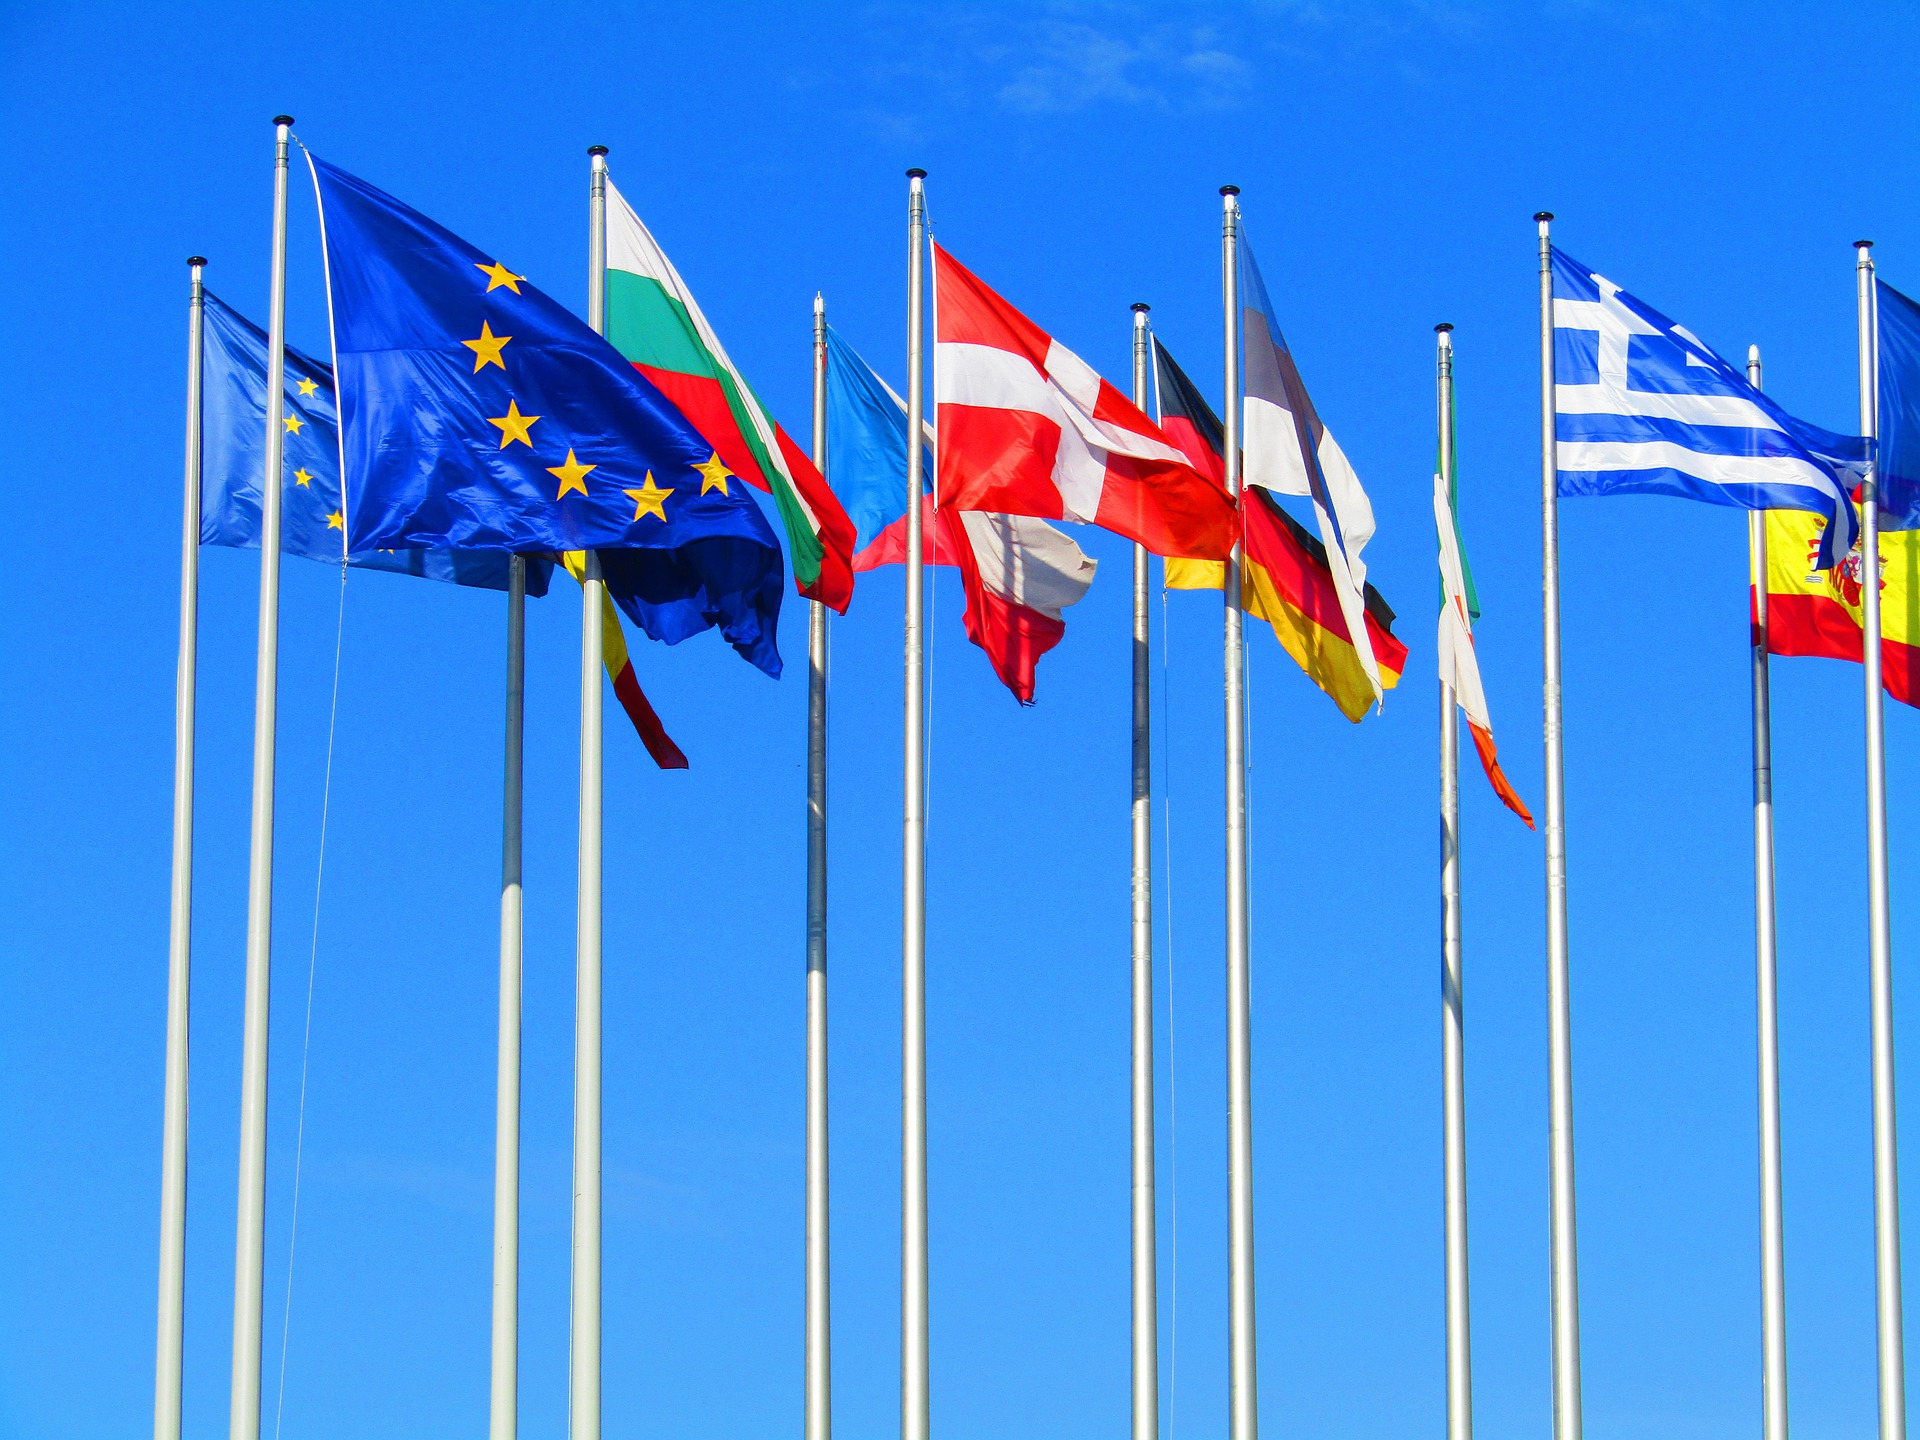  Europa-Flagge und weitere Länderflaggen - Foto: pixabay.com - Udo Pohlmann 